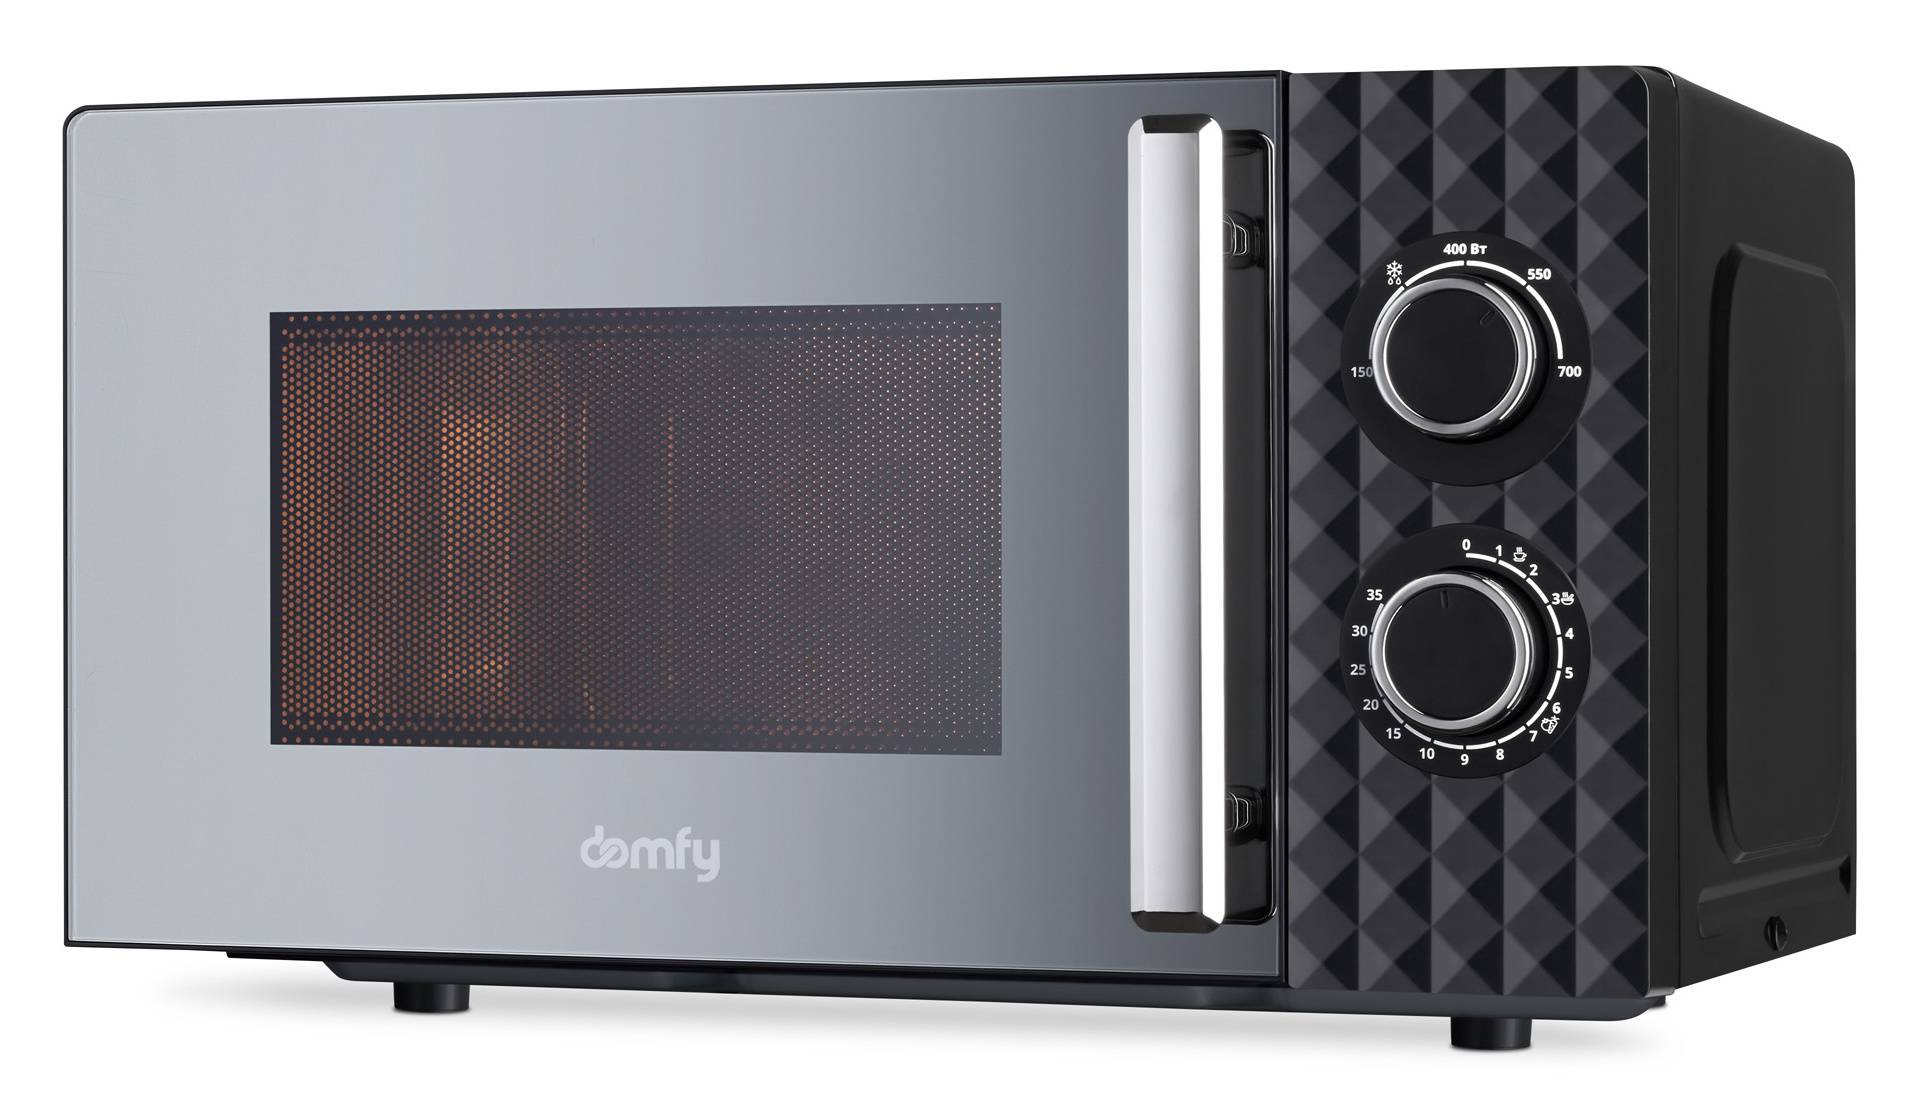 Микроволновая печь Domfy DSB-MW102, черный